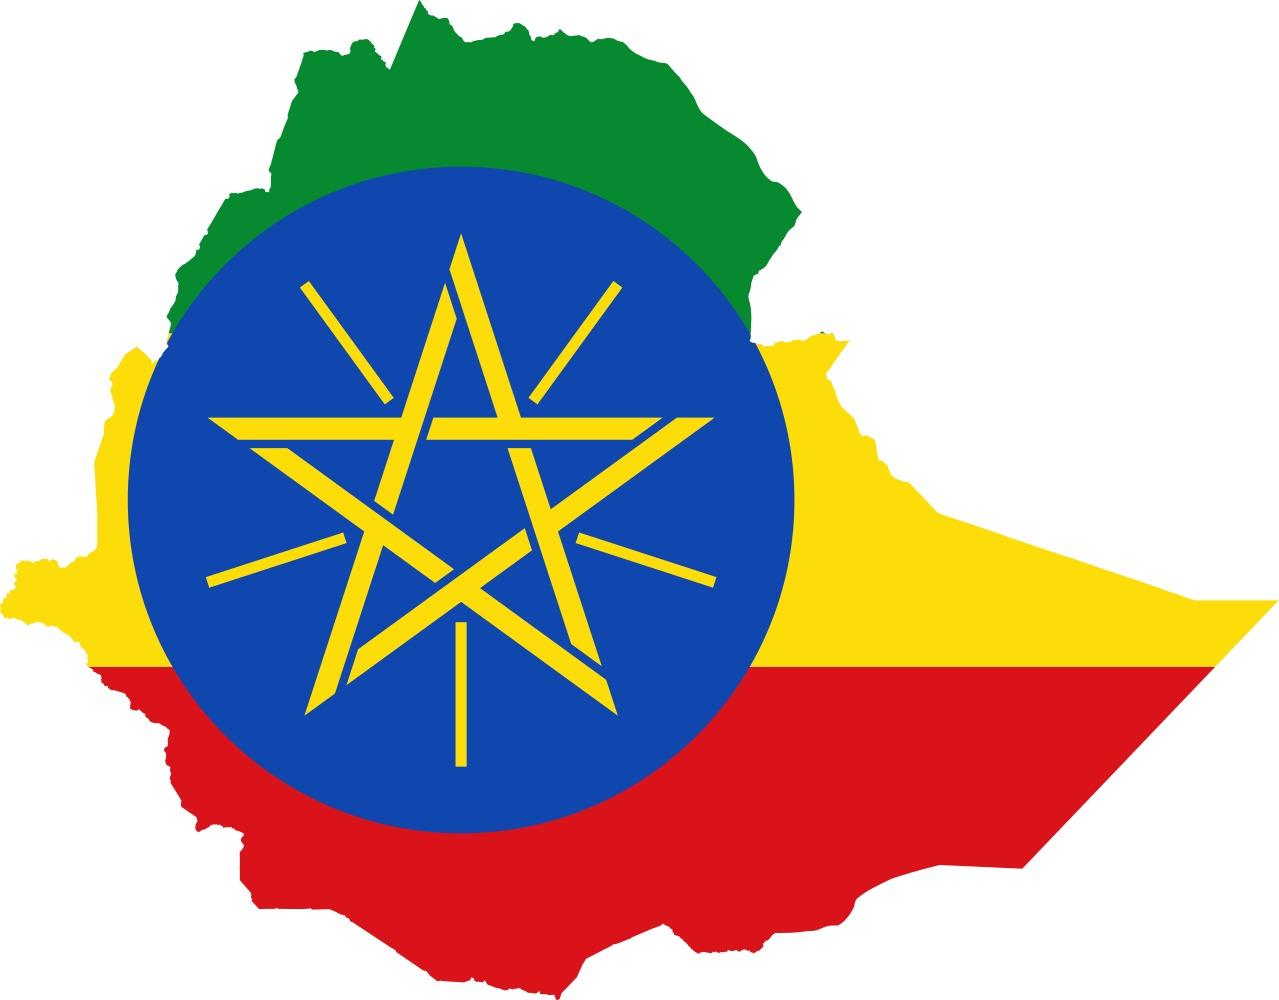 Bản đồ Ethiopia cờ: Điểm tới mới cho những người đam mê lịch sử. Với bản đồ Ethiopia cờ, bạn sẽ khám phá được nhiều điểm thú vị và tìm hiểu thêm nền văn hoá đa dạng của quốc gia này. Đồng thời, không thể bỏ qua sự độc đáo của hình ảnh cờ Ethiopia trên bản đồ này.